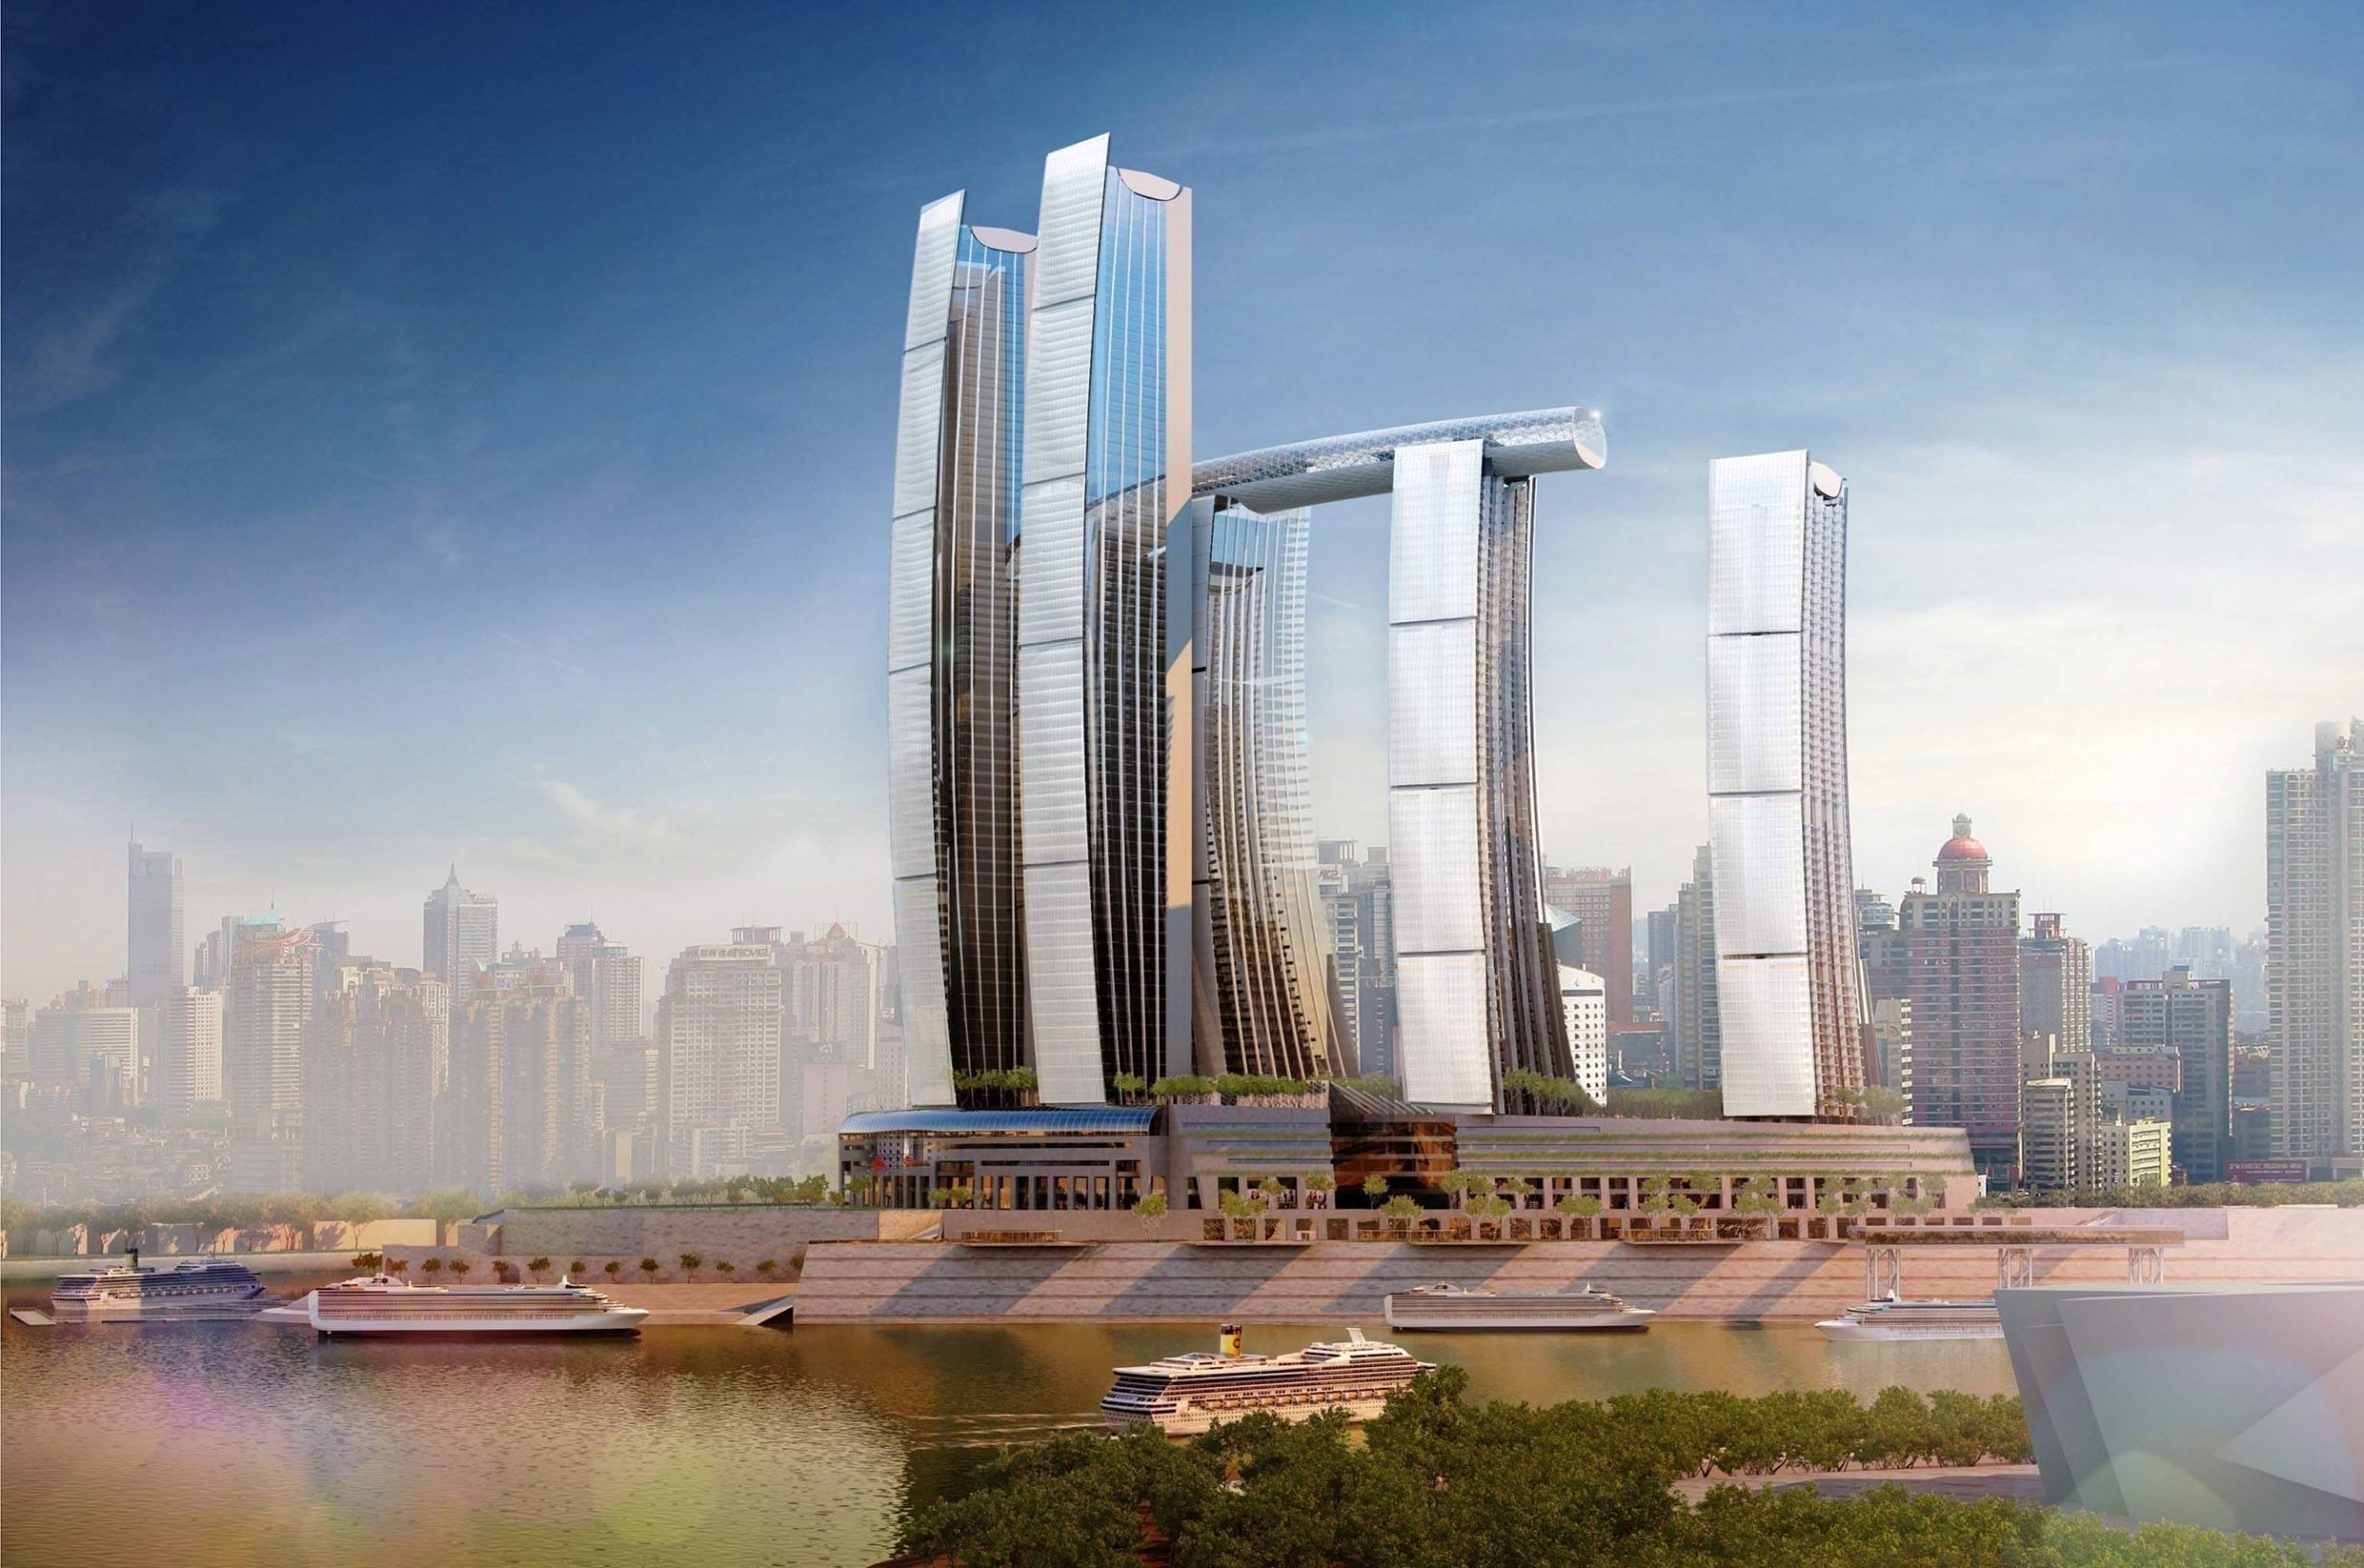 重庆又将建新的超高大楼,高度为468米,将成为西南最高建筑